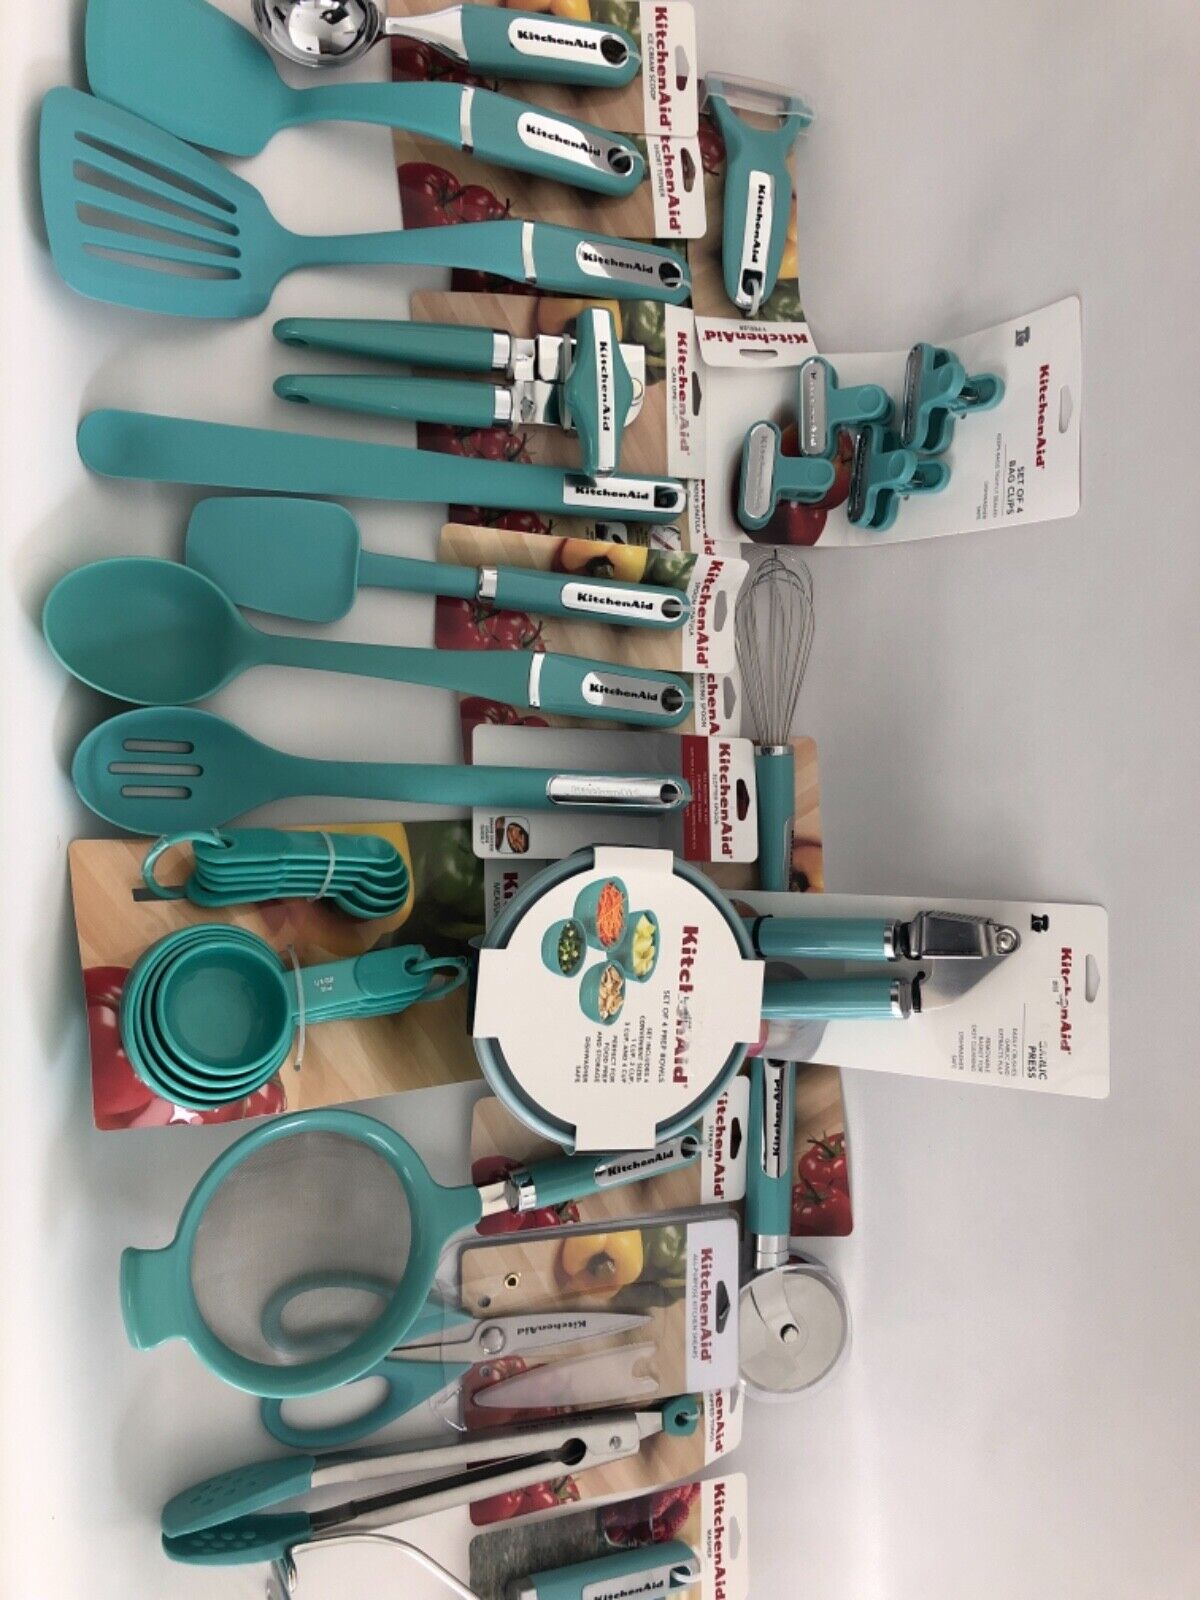 Kitchen Aid aqua utensils.  Blue kitchen designs, Red kitchen